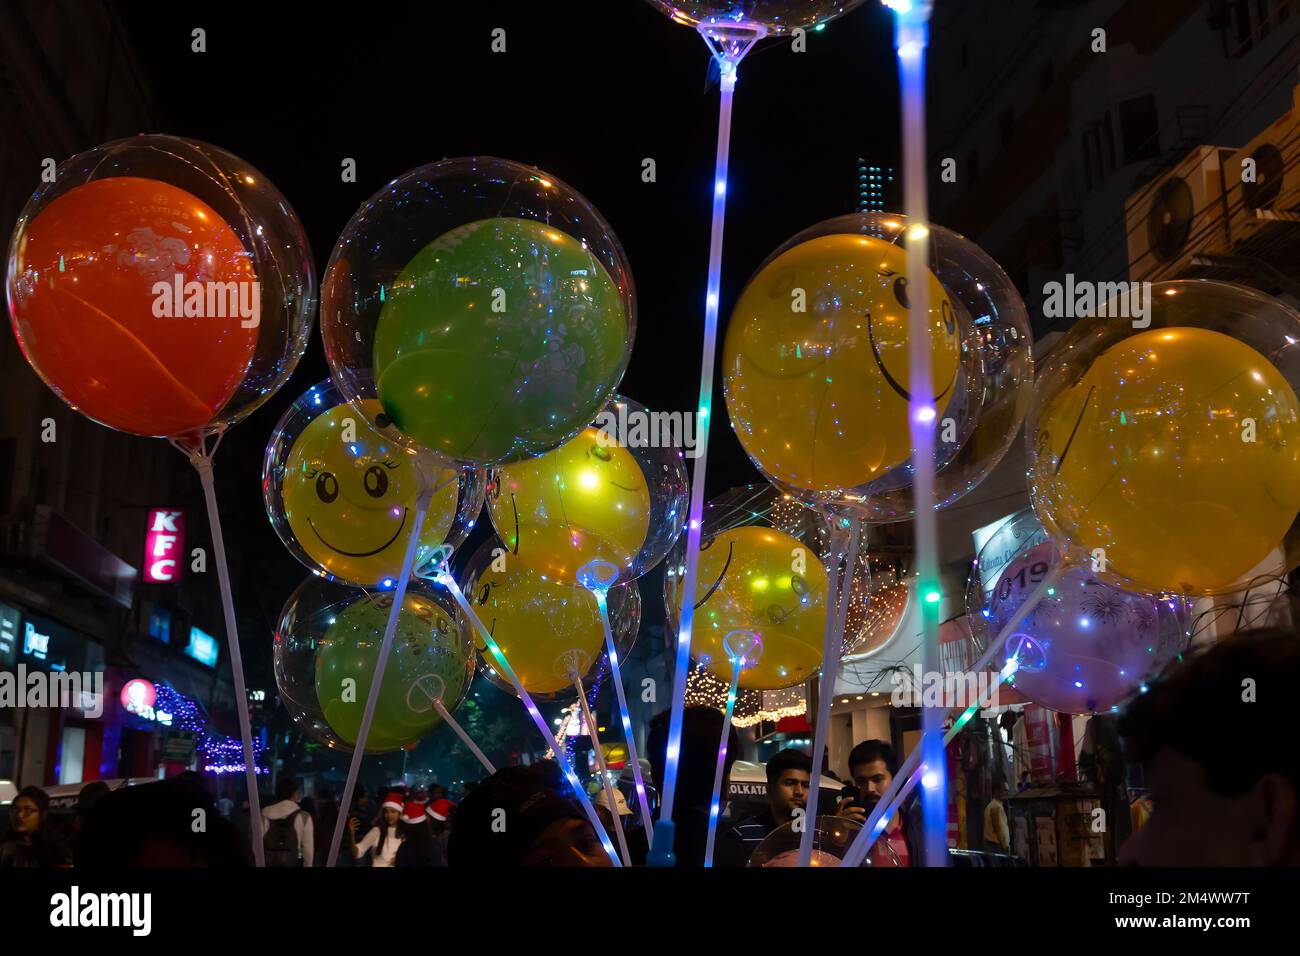 Kalkutta, Westbengalen, Indien - 26.12.2018 : farbenfroh dekorierte Ballons, Lichter und Weihnachtsfeier in der beleuchteten Parkstraße mit Freude. Stockfoto